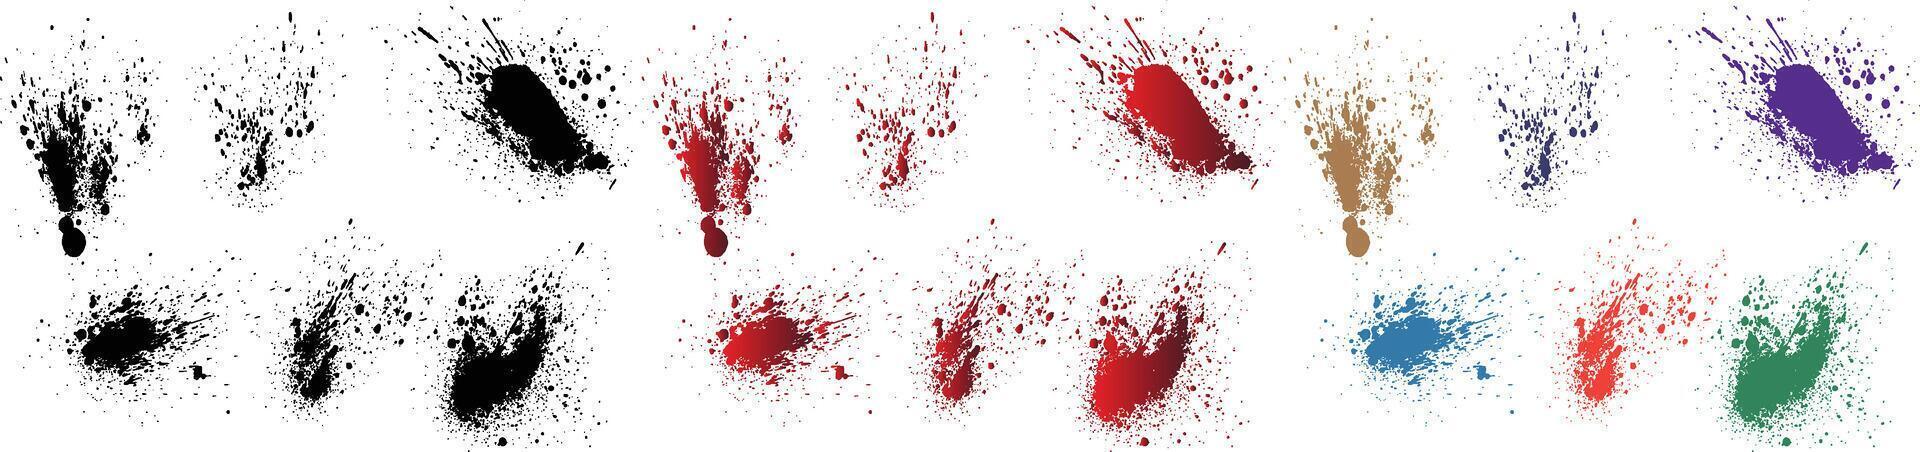 abstrakt Grunge einstellen von lila, orange, Schwarz, Rot, Grün, Weizen Farbe Blut Spritzer Bürste Schlaganfall Hintergrund Banner vektor